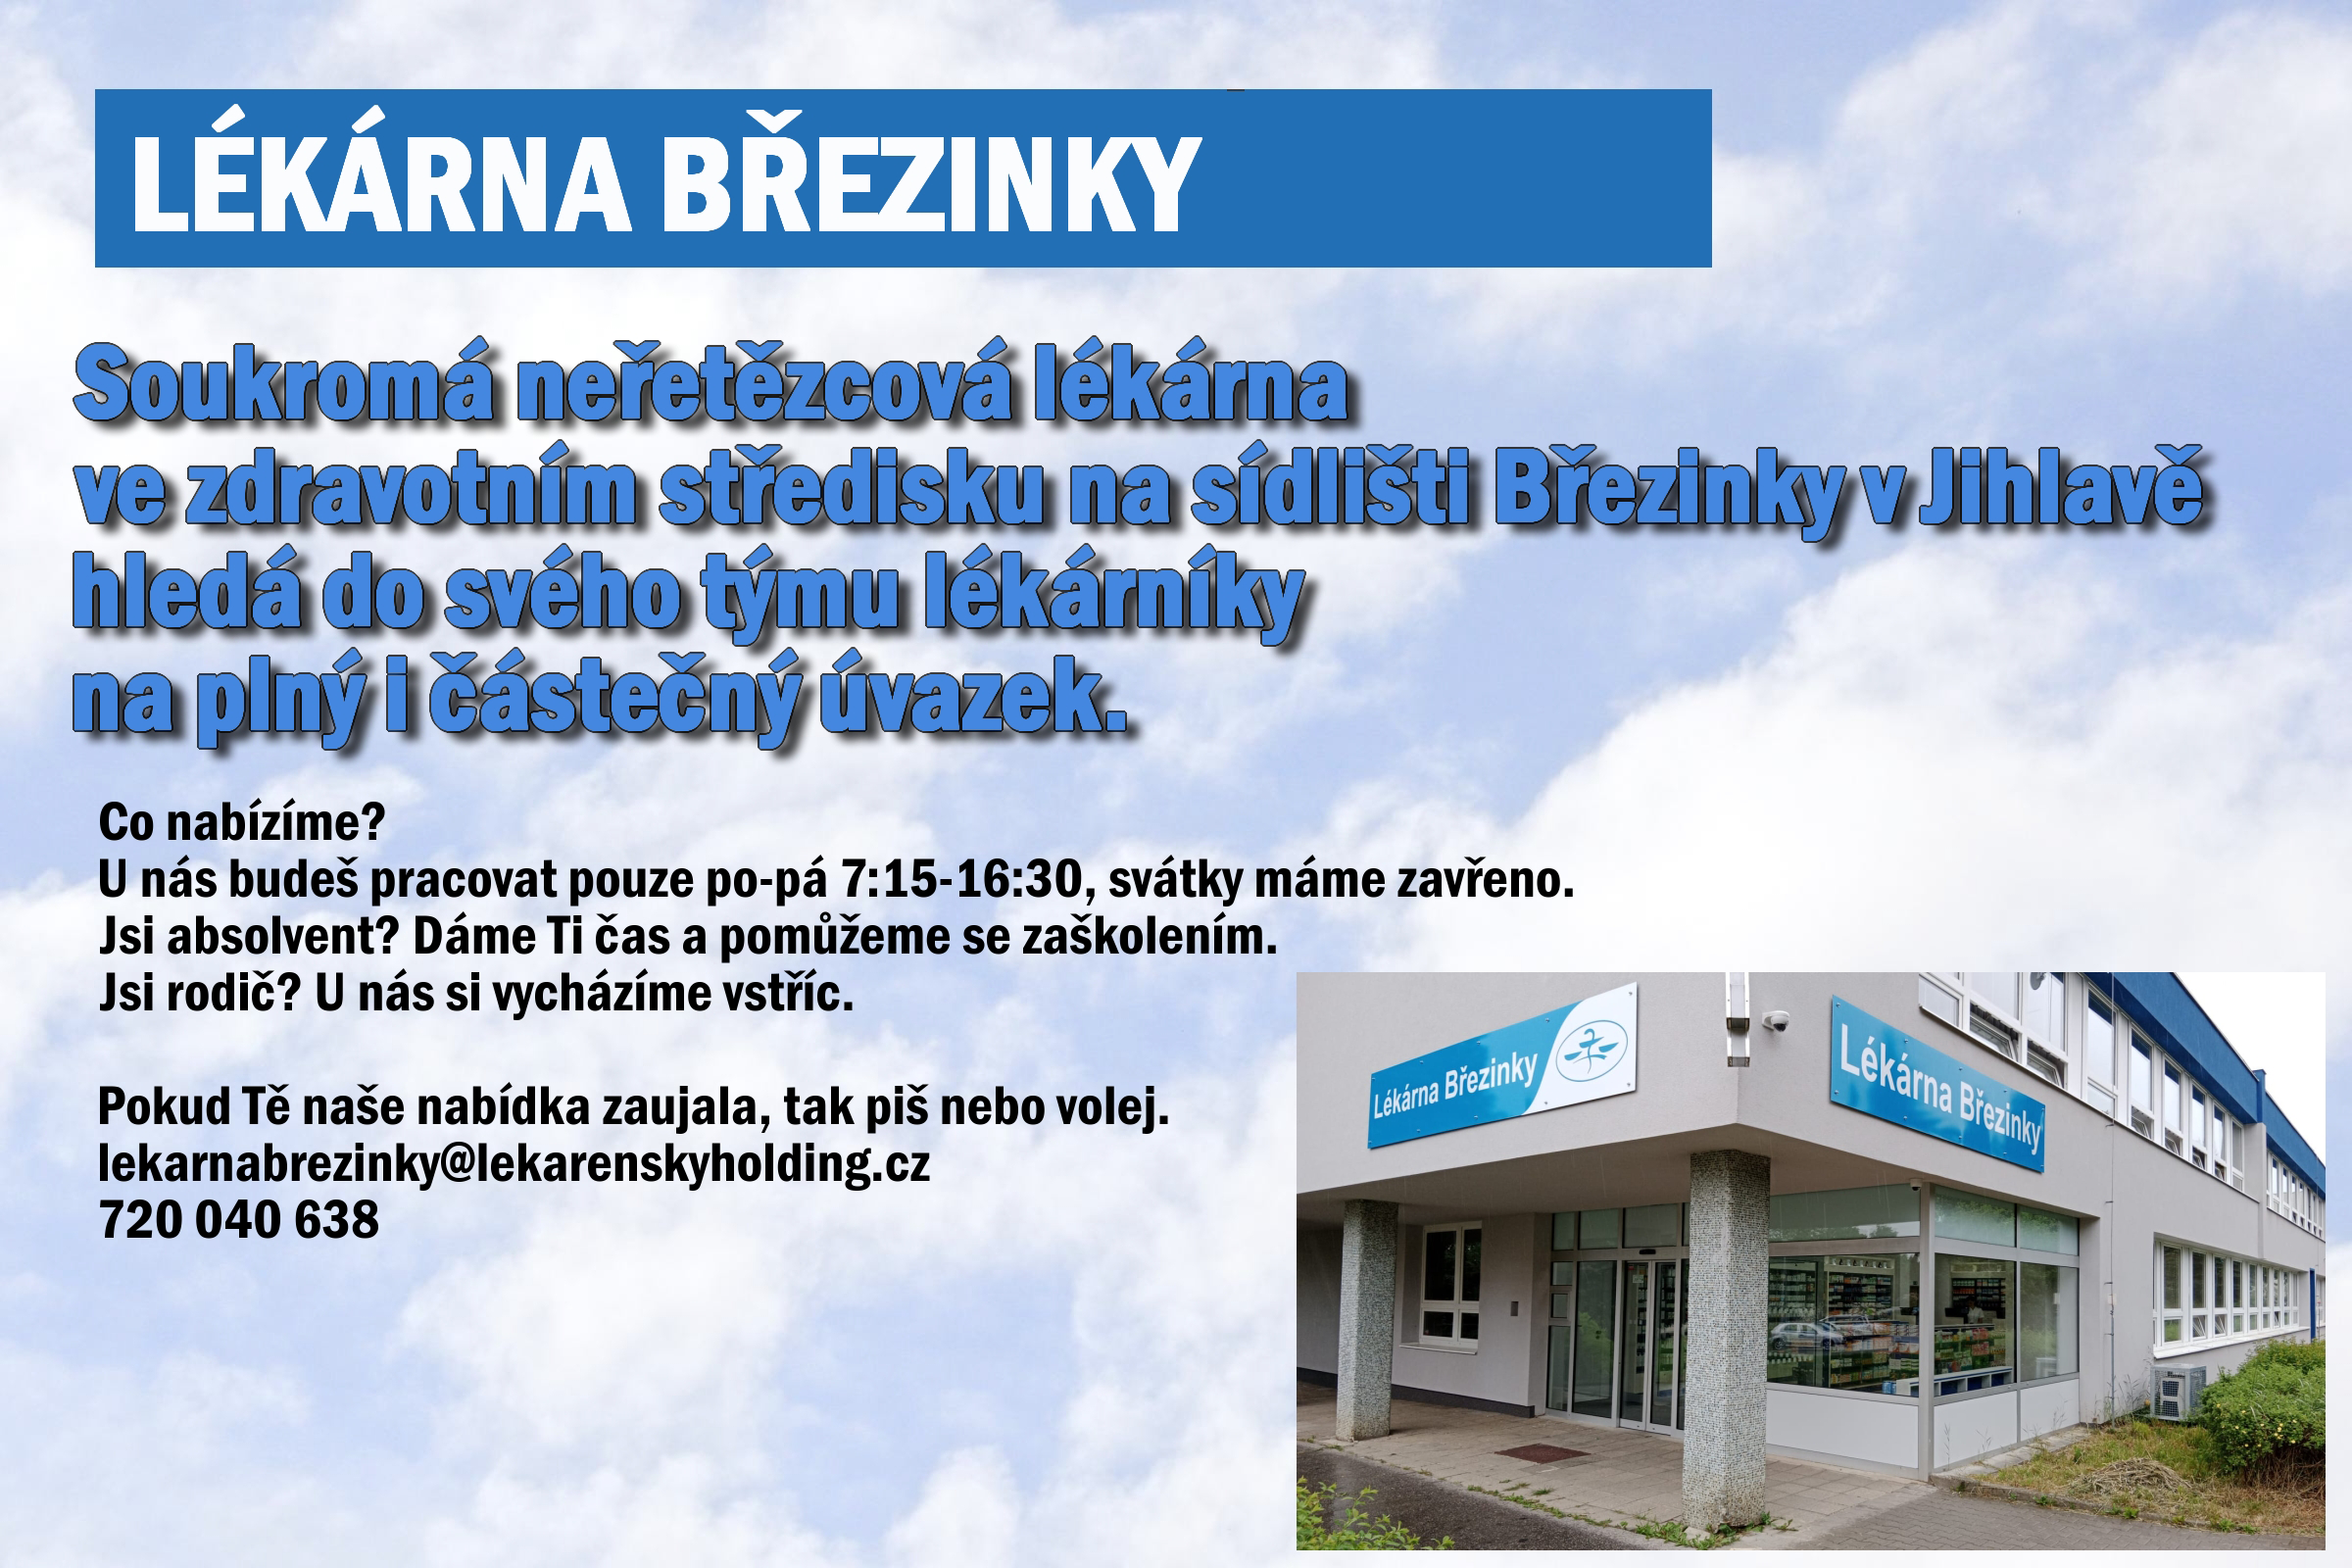 Lékárna Březinky, ČR - ŠP farmácia